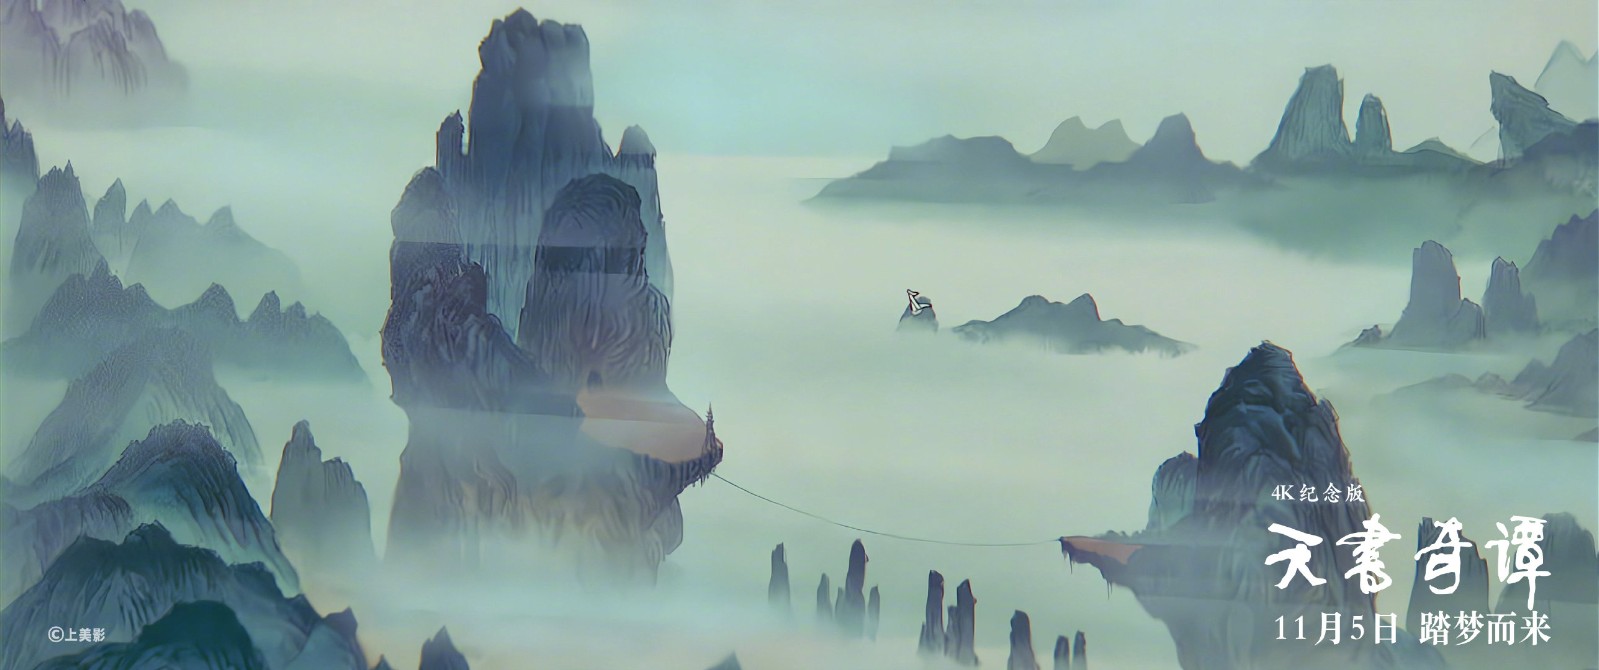 国产动画神作《天书奇谭》4K纪念版定档 11月5日上映